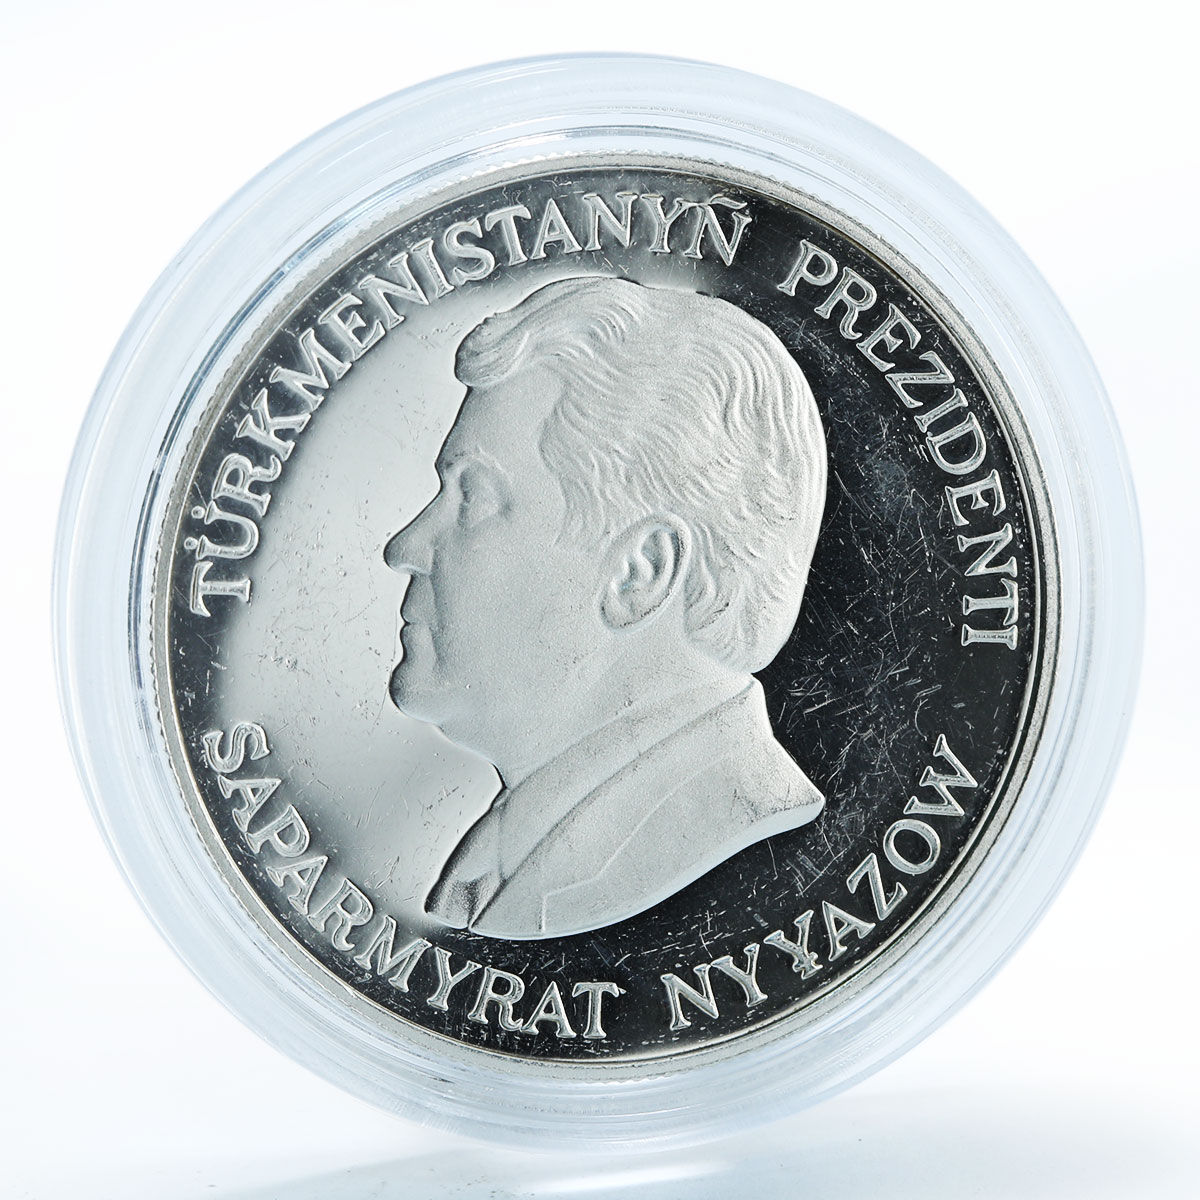 3 маната в рублях. 500 Манат Туркменистан. 1000 Манат золото монета. Монета 500 манат 1999 год Туркменистан. 1 Доллар манат.